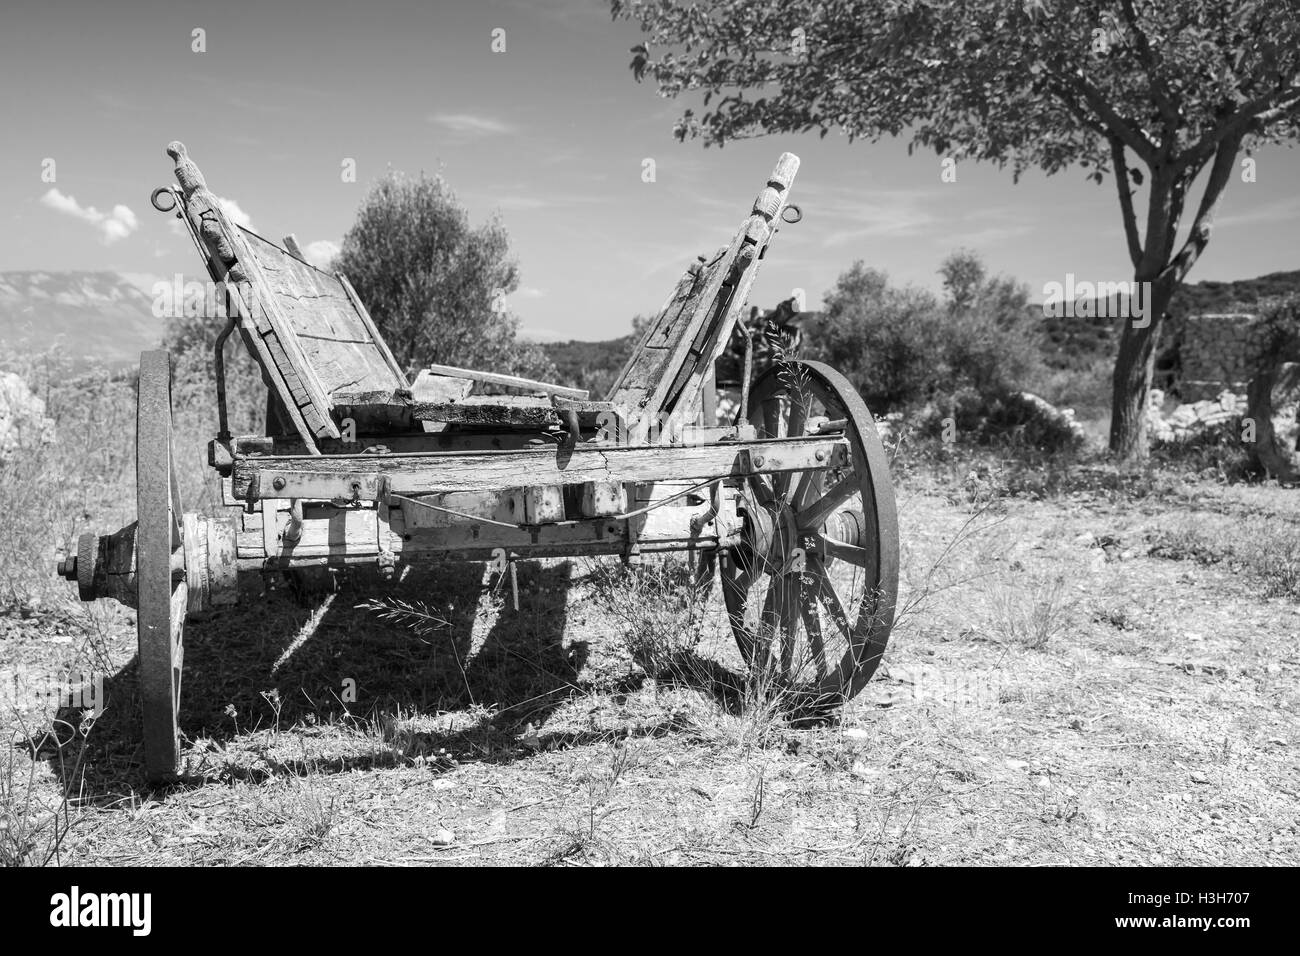 Leeren alten ländlichen Holzwagen, schwarz / weiß Foto Nahaufnahme Stockfoto